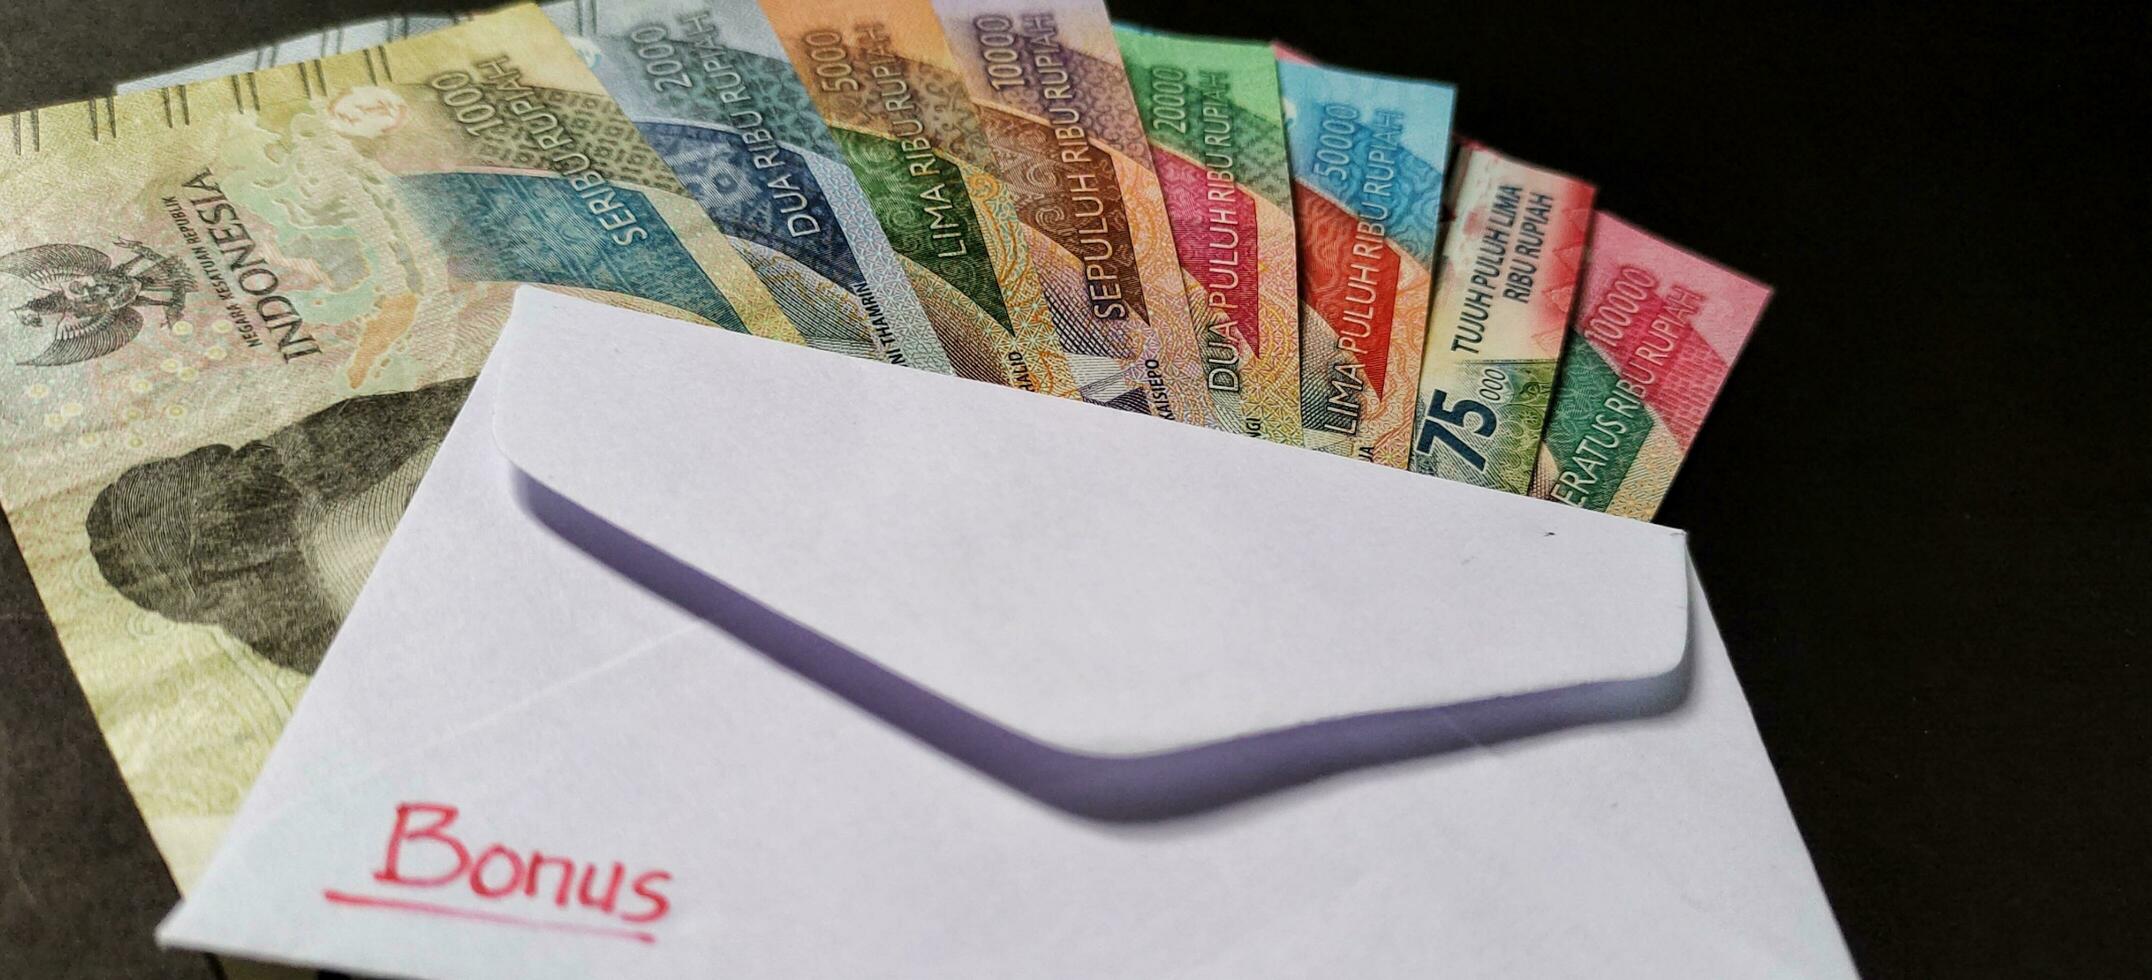 nieuw bankbiljetten uitgegeven in 2022 van rp. 1.000 naar rp. 100.000. Indonesisch roepia valuta met een wit envelop gelabeld bonus. tunjangan hari raya concept, dichtbij omhoog visie foto